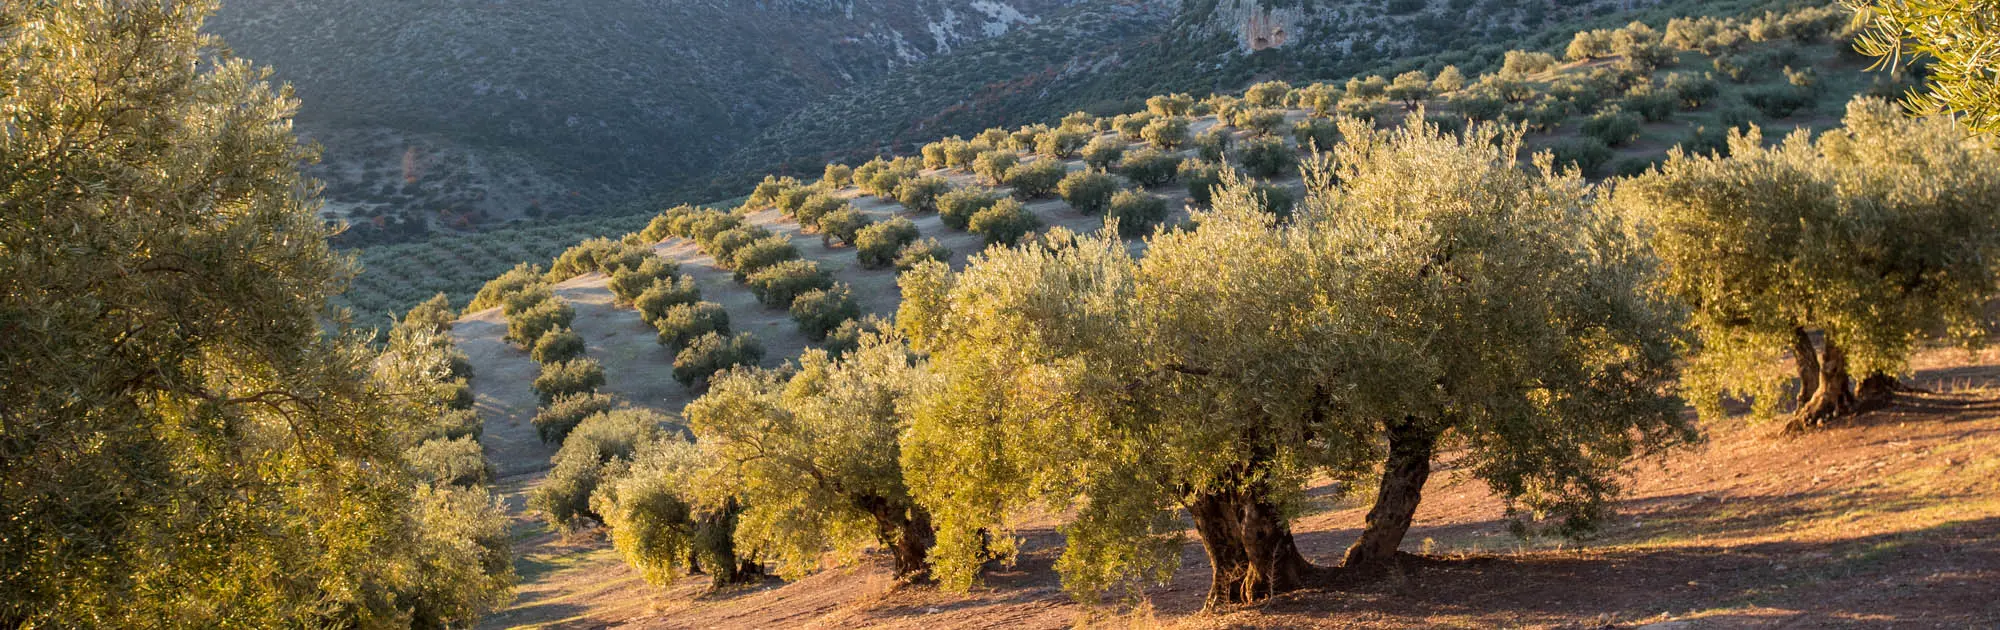 Aceite de oliva ecológico: características y en qué platos usarlo.